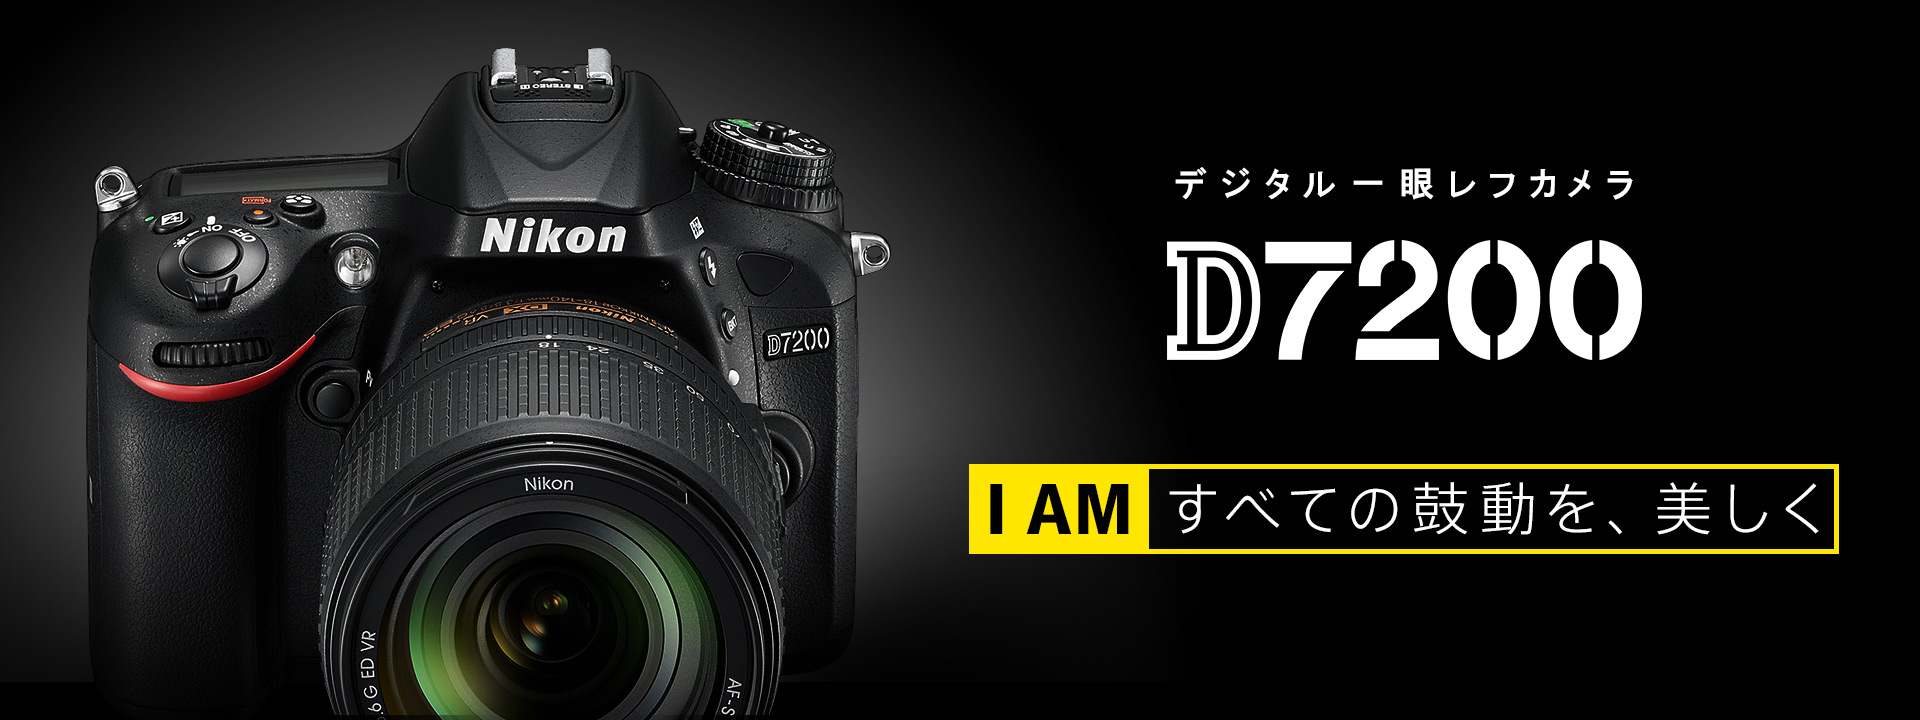 Nikon D7200のボディ(レンズのおまけ付き)